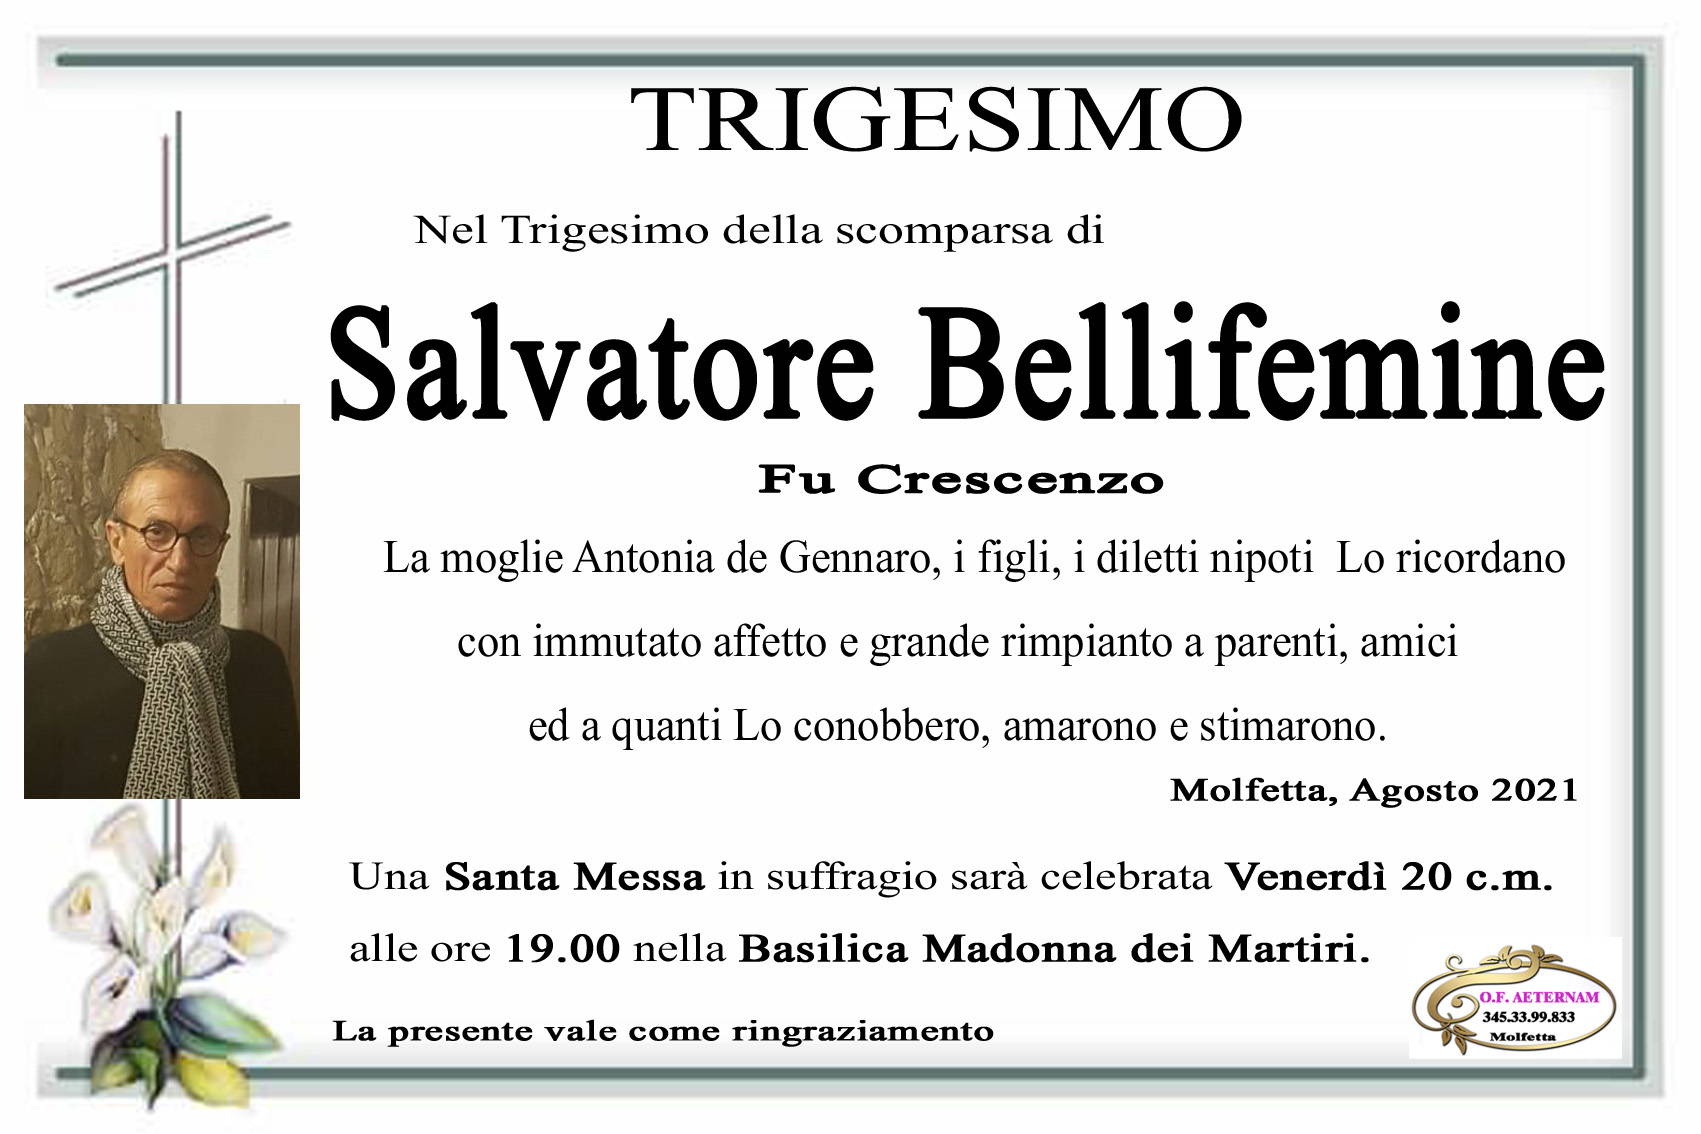 Salvatore Bellifemine